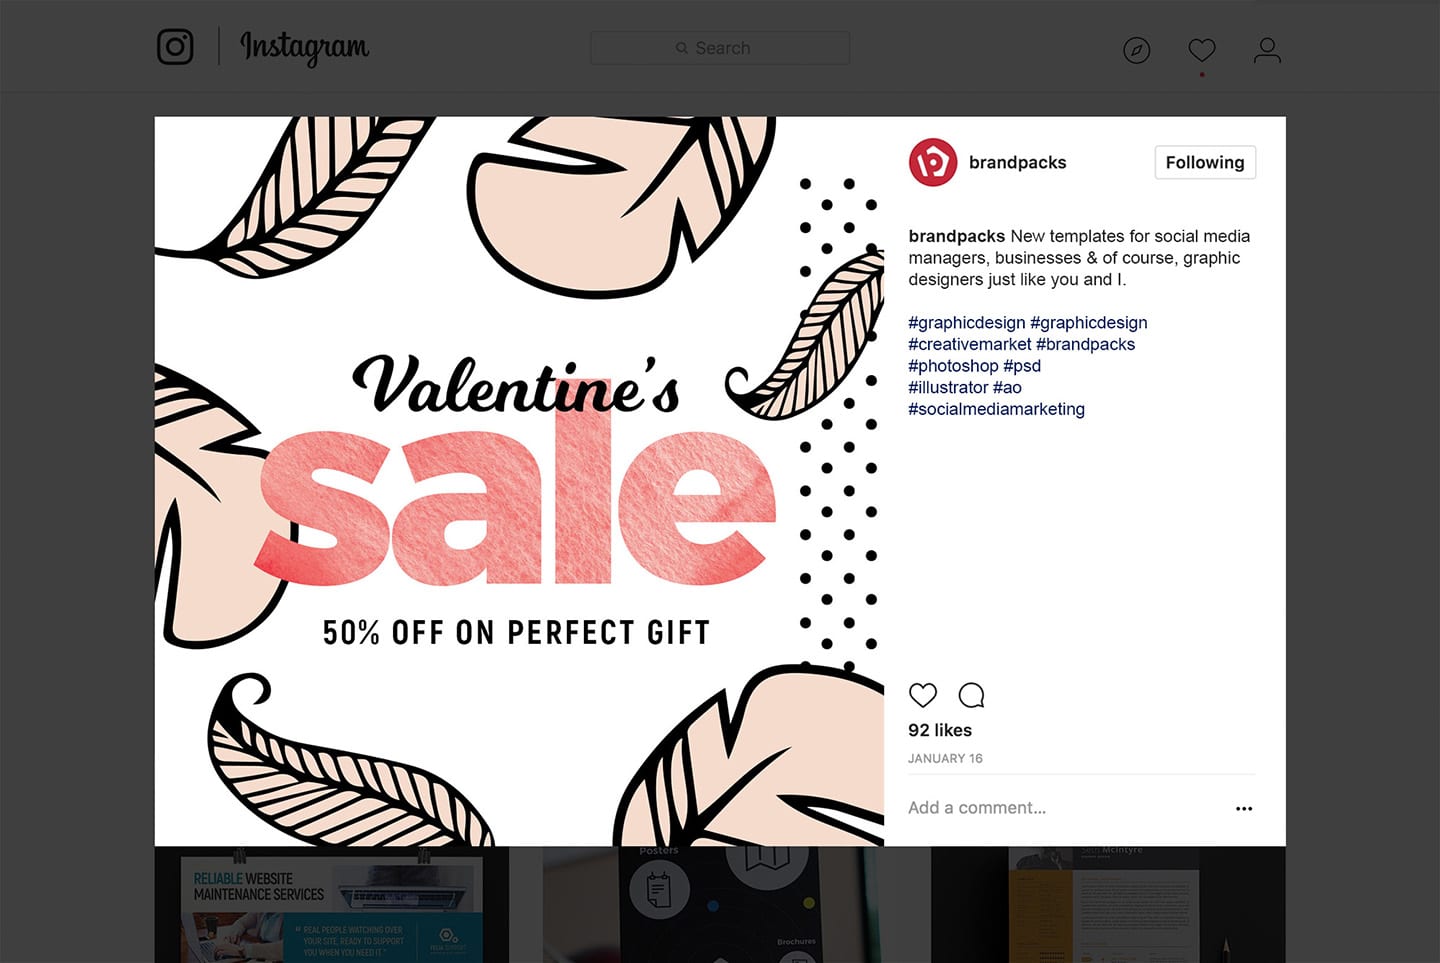 Valentine's Day Social Media Templates